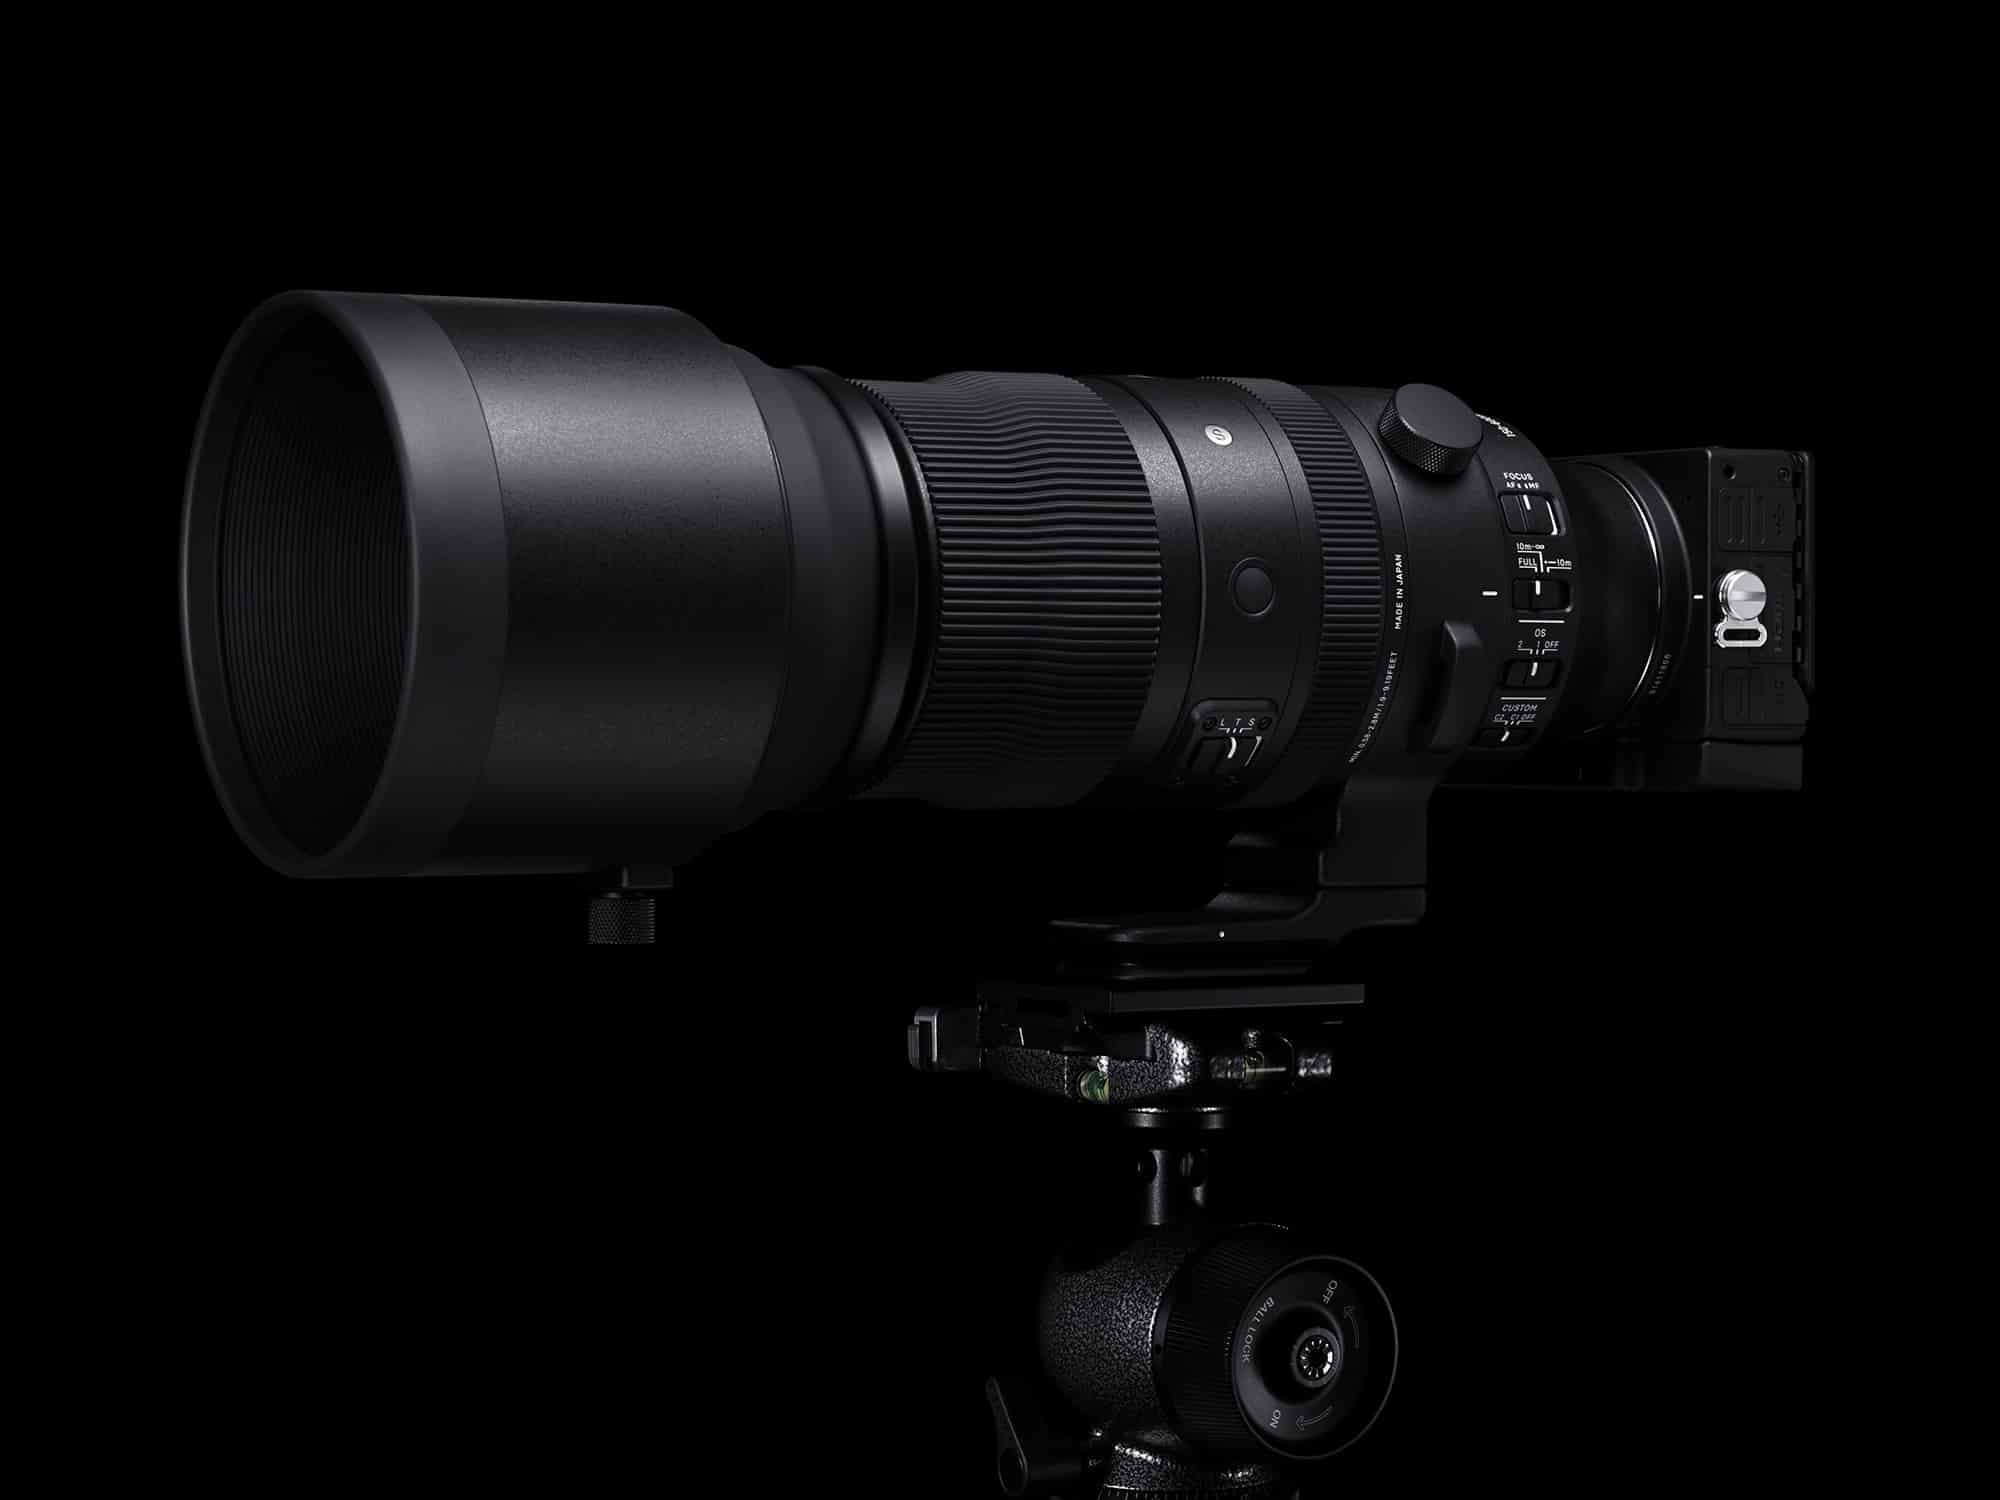 Đặt trước ống kính Sigma 150-600mm F5-6.3 DG DN OS Sports cho Sony E tặng thêm 1 năm bảo hành kèm balo trị giá 2.6 triệu đồng